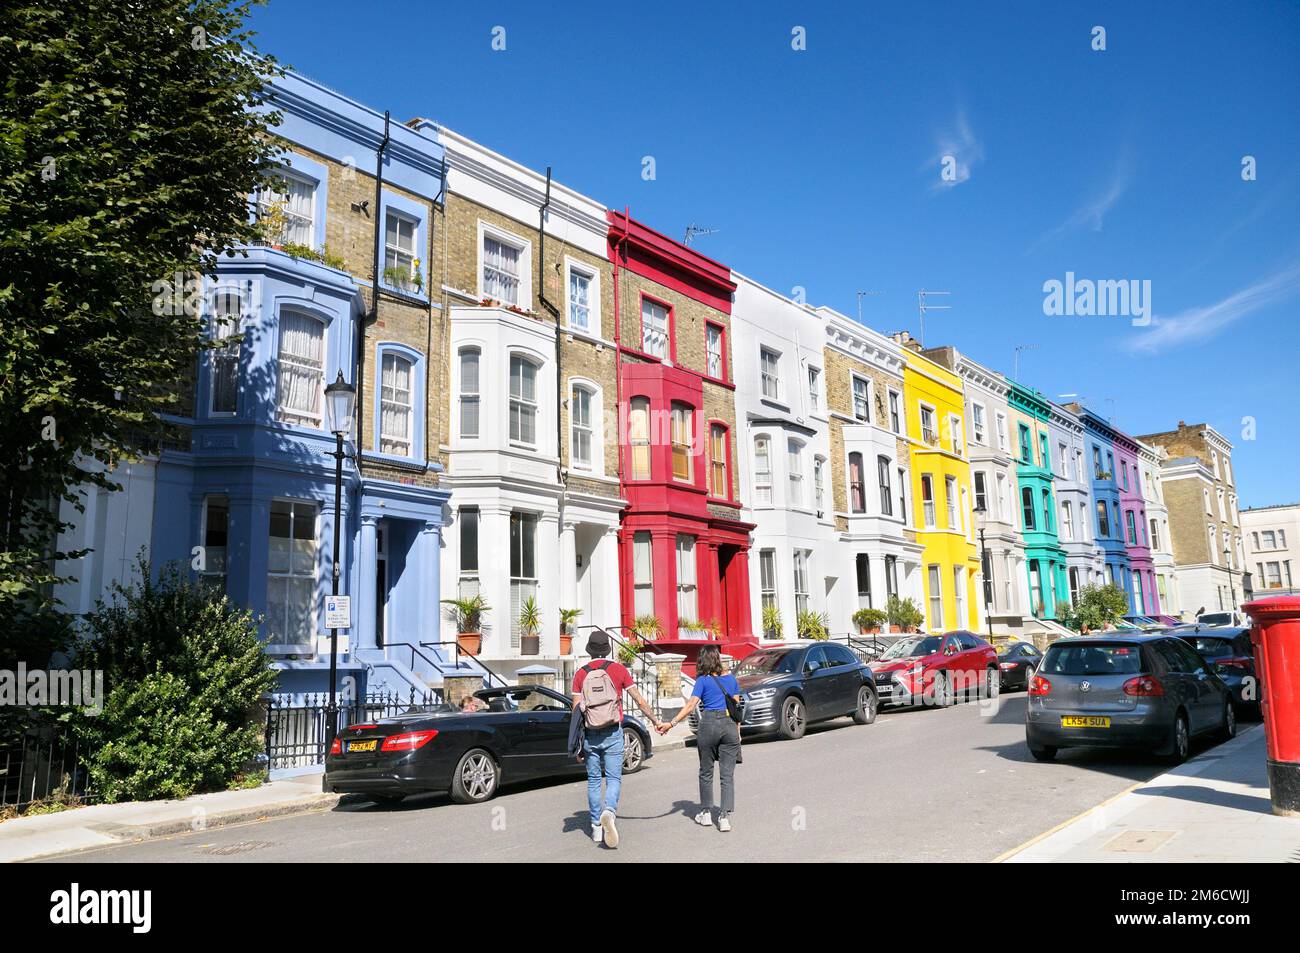 Ein junges Paar, das an einem sonnigen Tag Händchen hält und eine Straße mit bunten Reihen von Reihenhäusern überquert, Notting Hill, London, England, Großbritannien Stockfoto